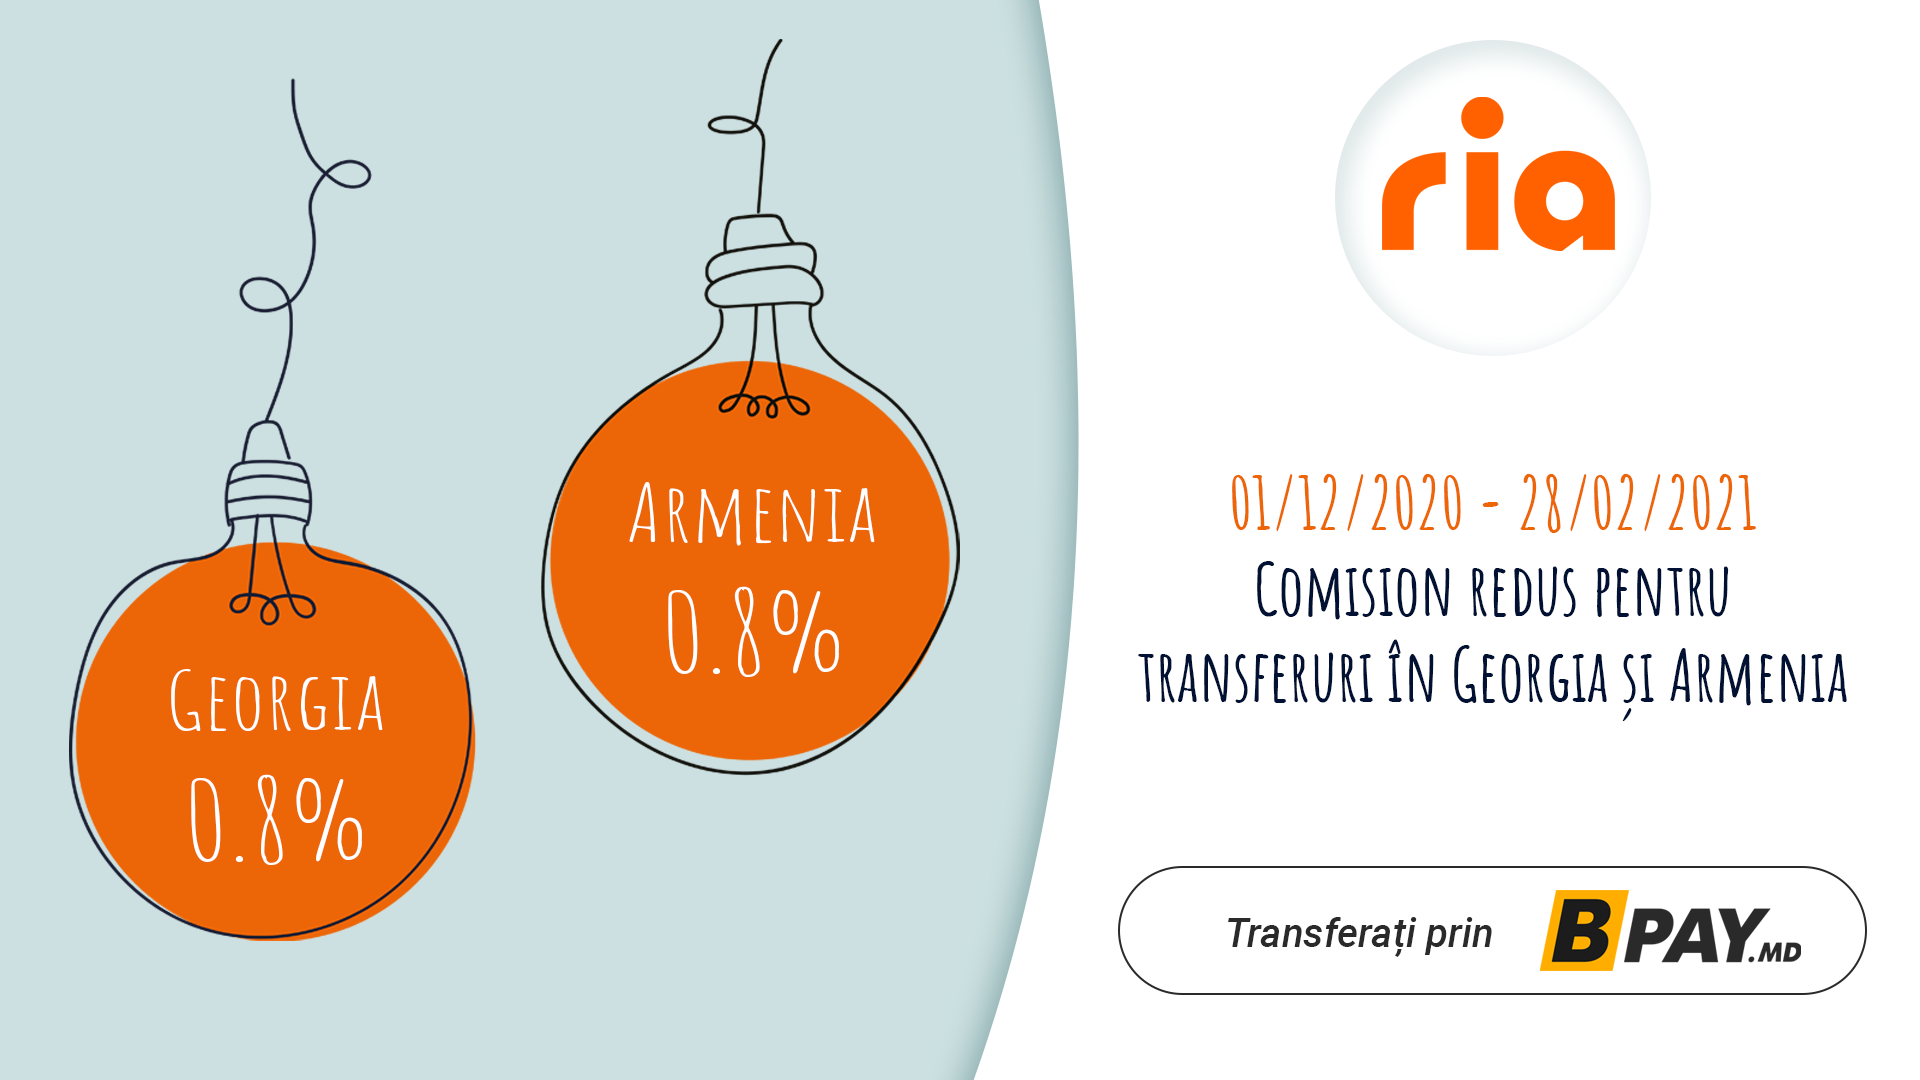 📢 PROMOȚIE de la RIA: Comision redus pentru transferuri de bani către Georgia și Armenia